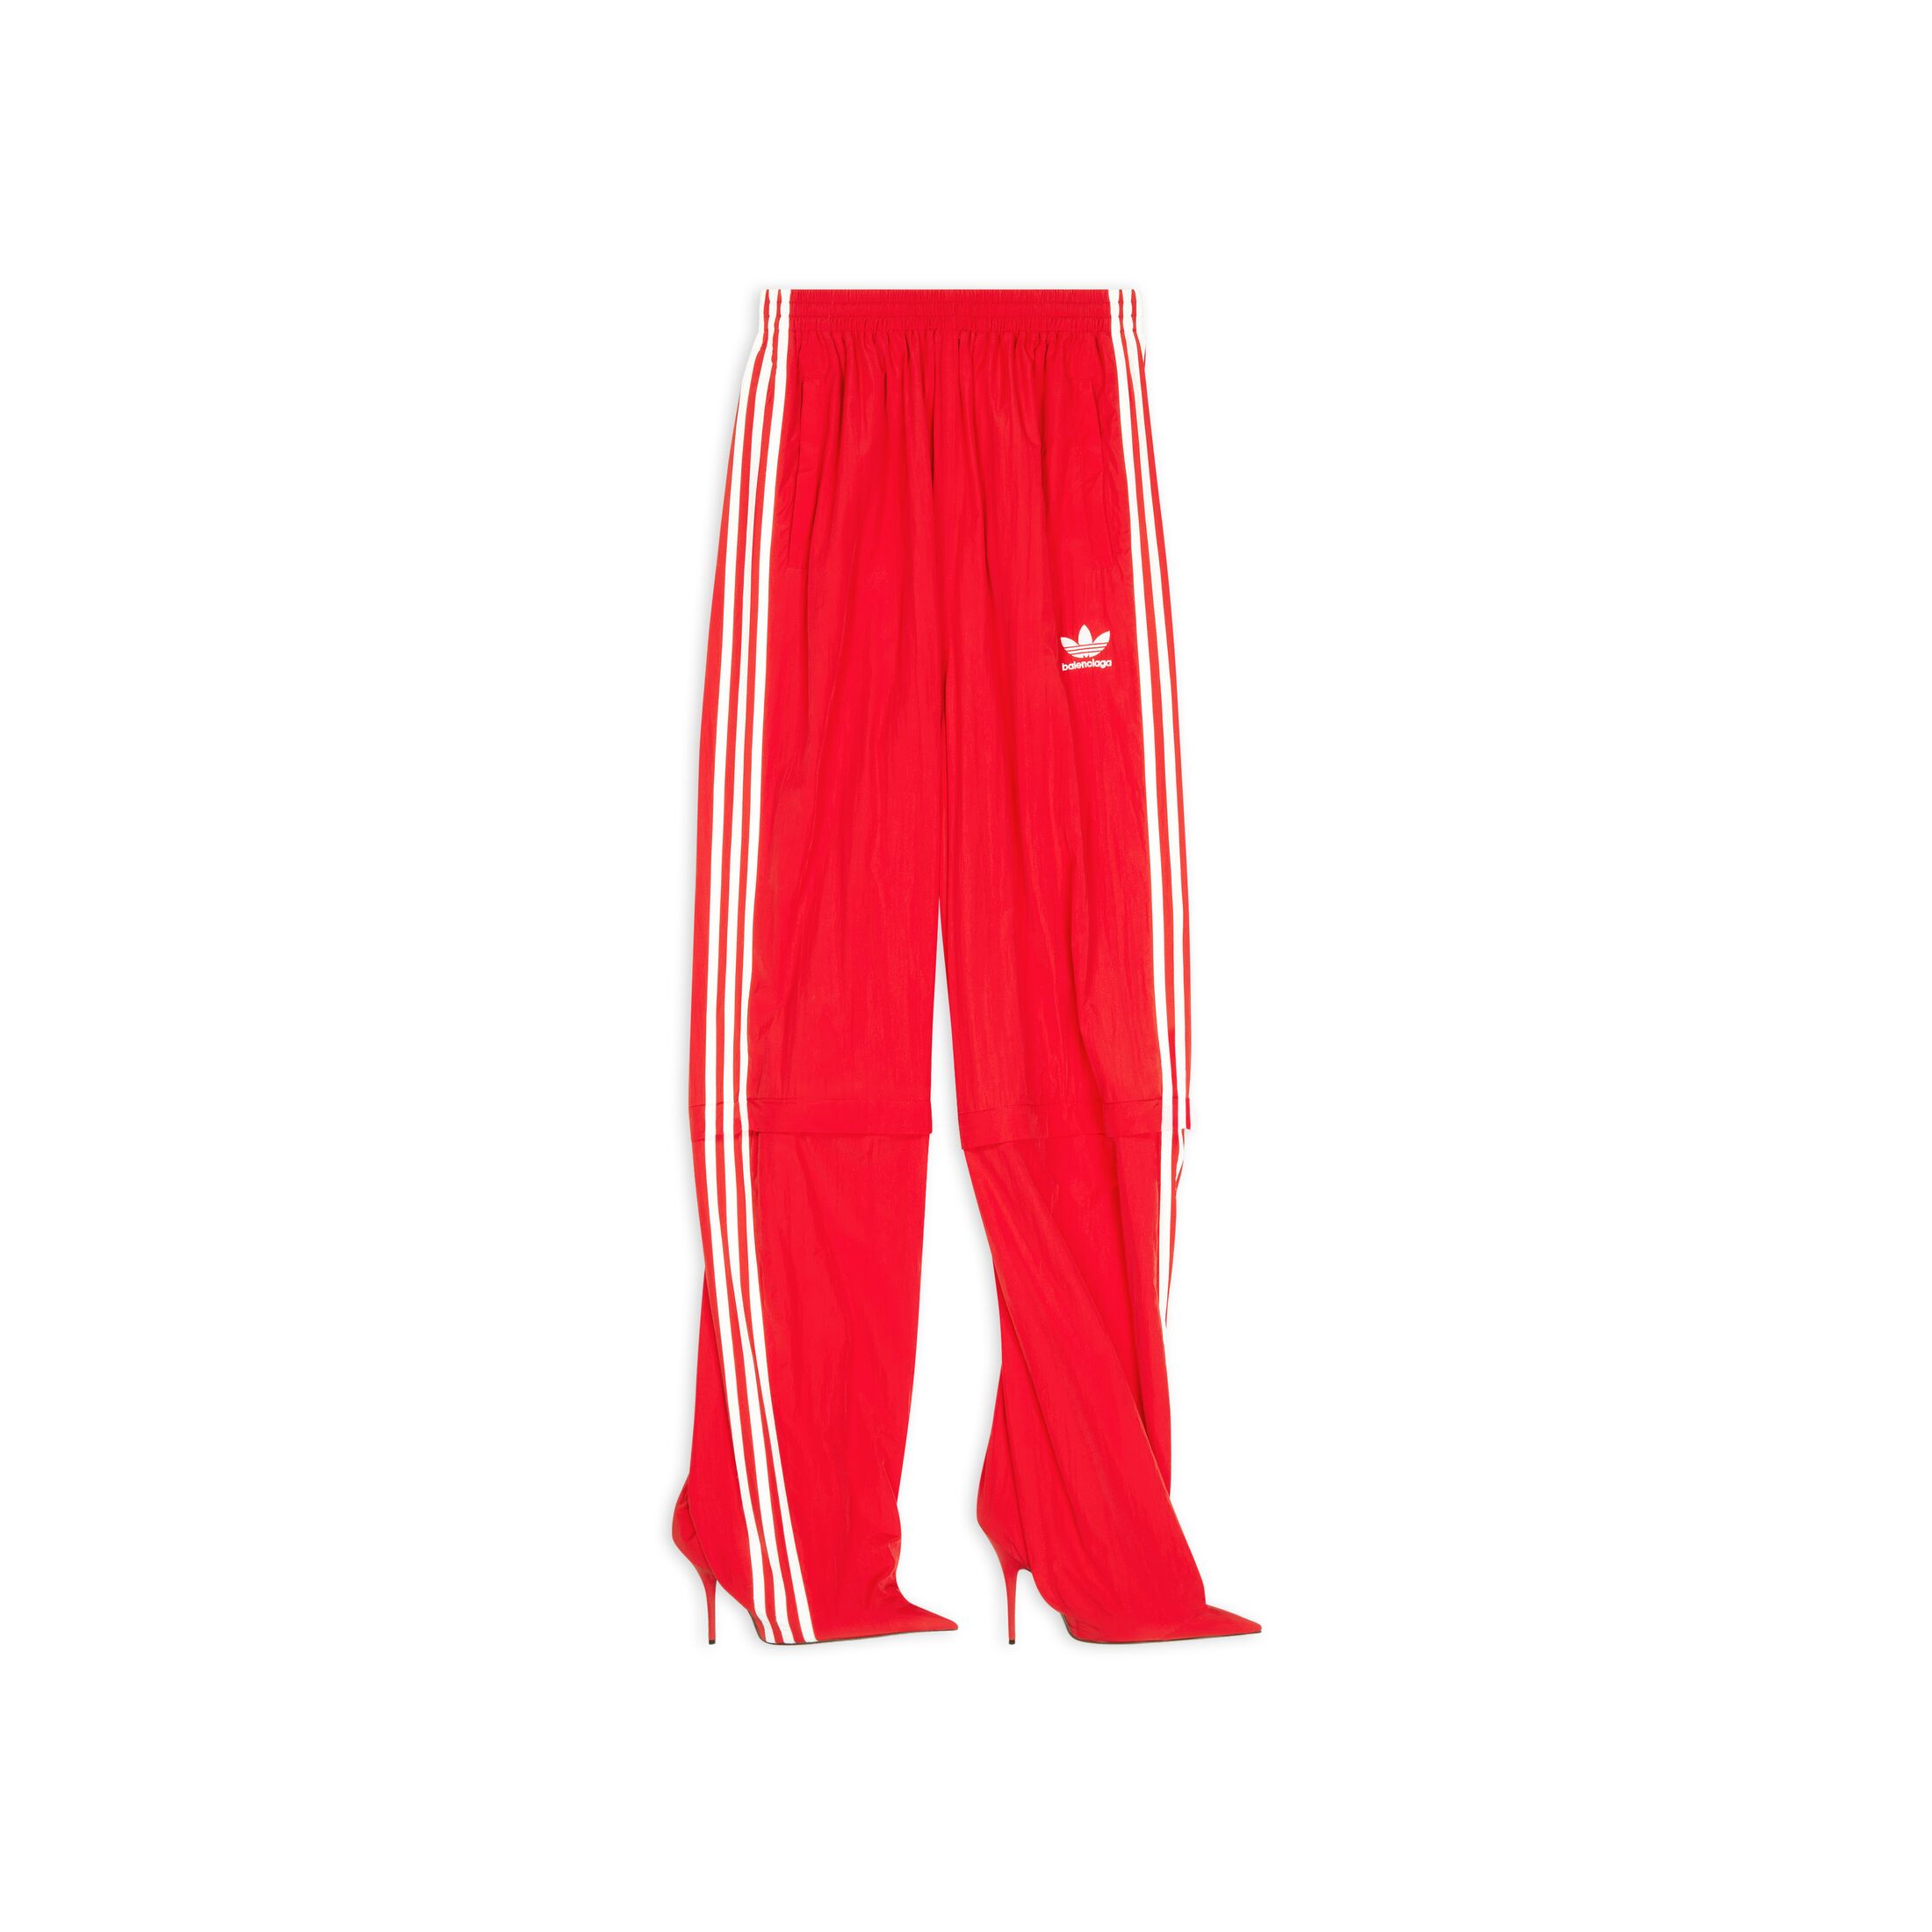 Balenciaga x adidas Pantashoes Red - FW22 - JP